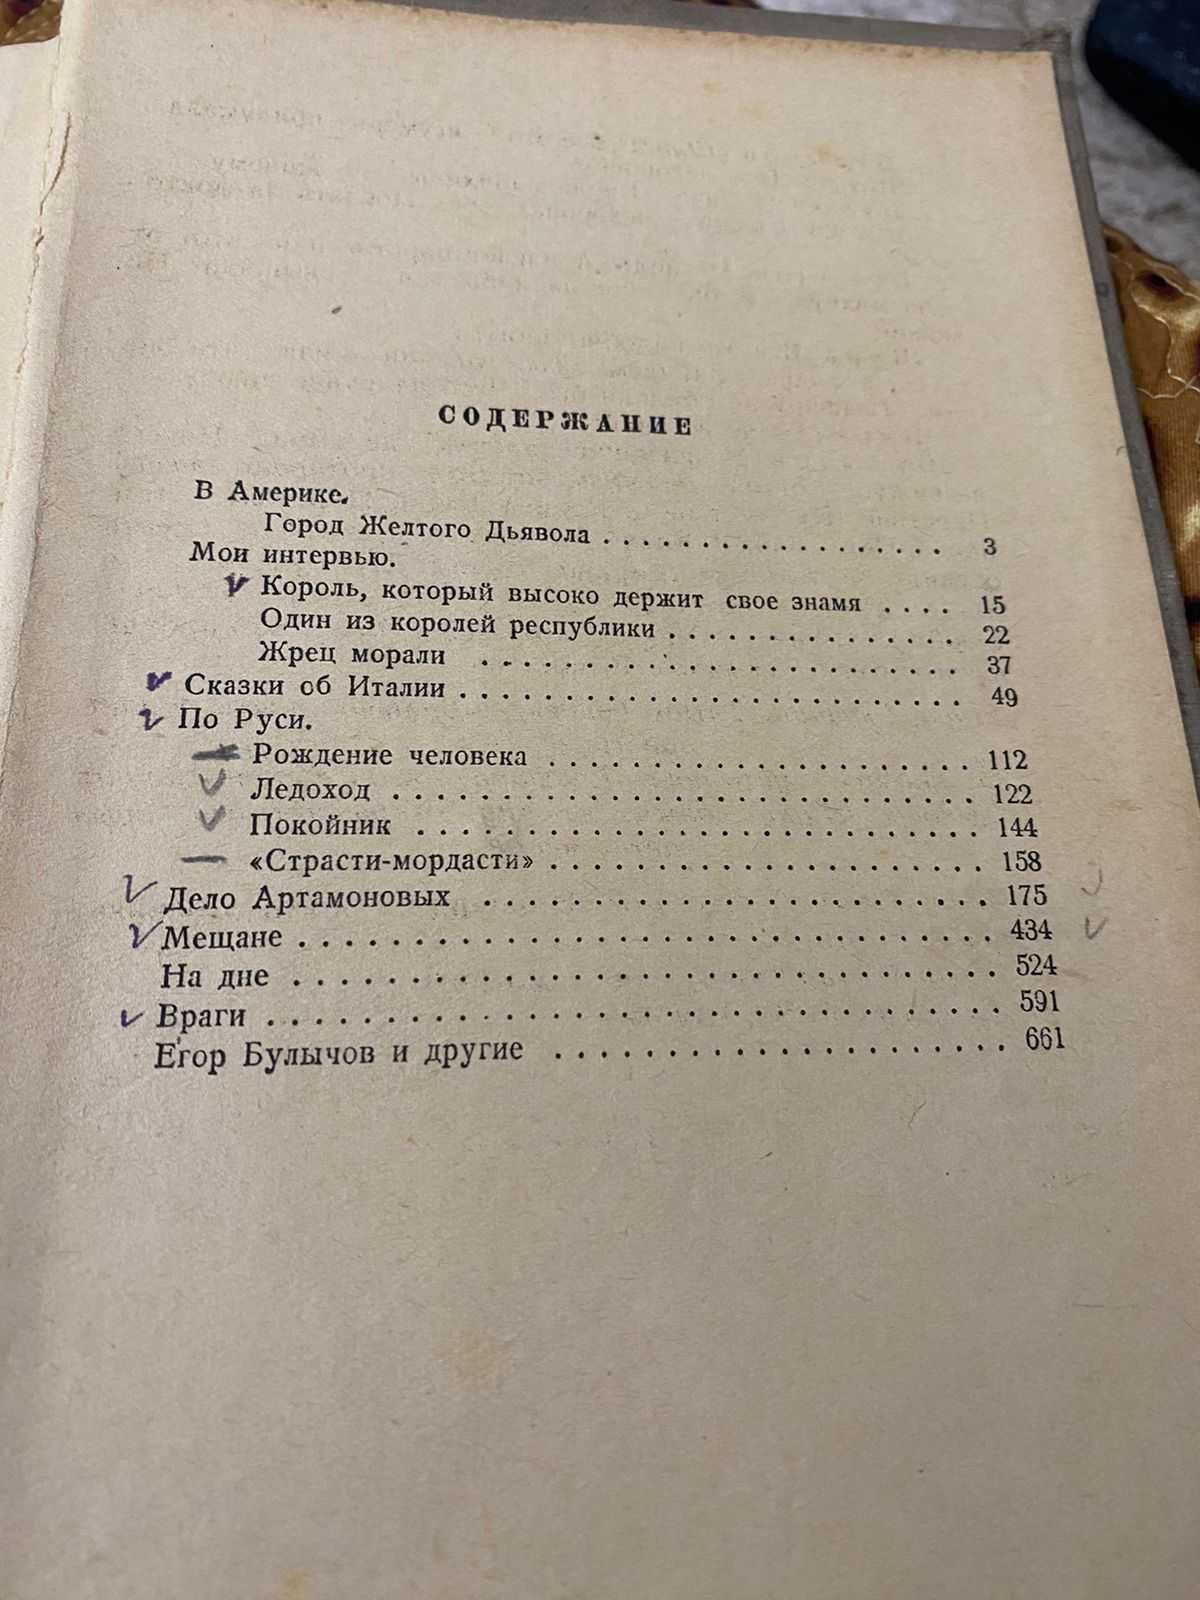 Горький Максим. 2 тома, 1954 год выпуска